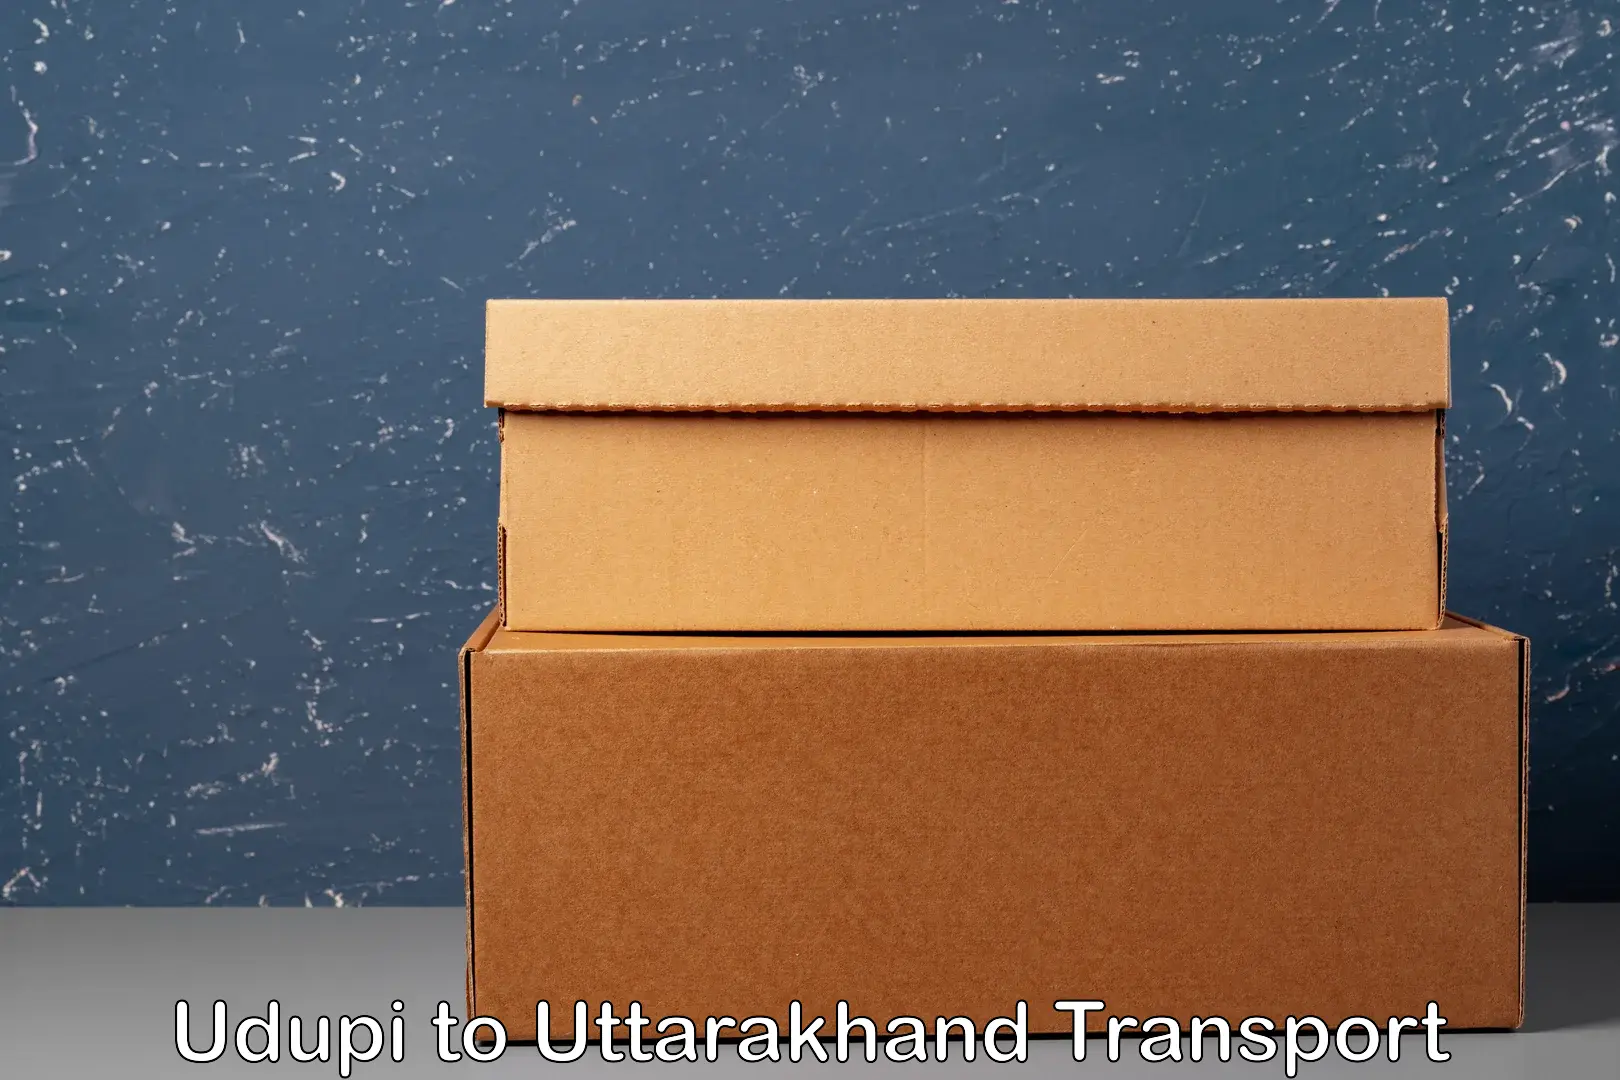 Road transport online services in Udupi to Udham Singh Nagar